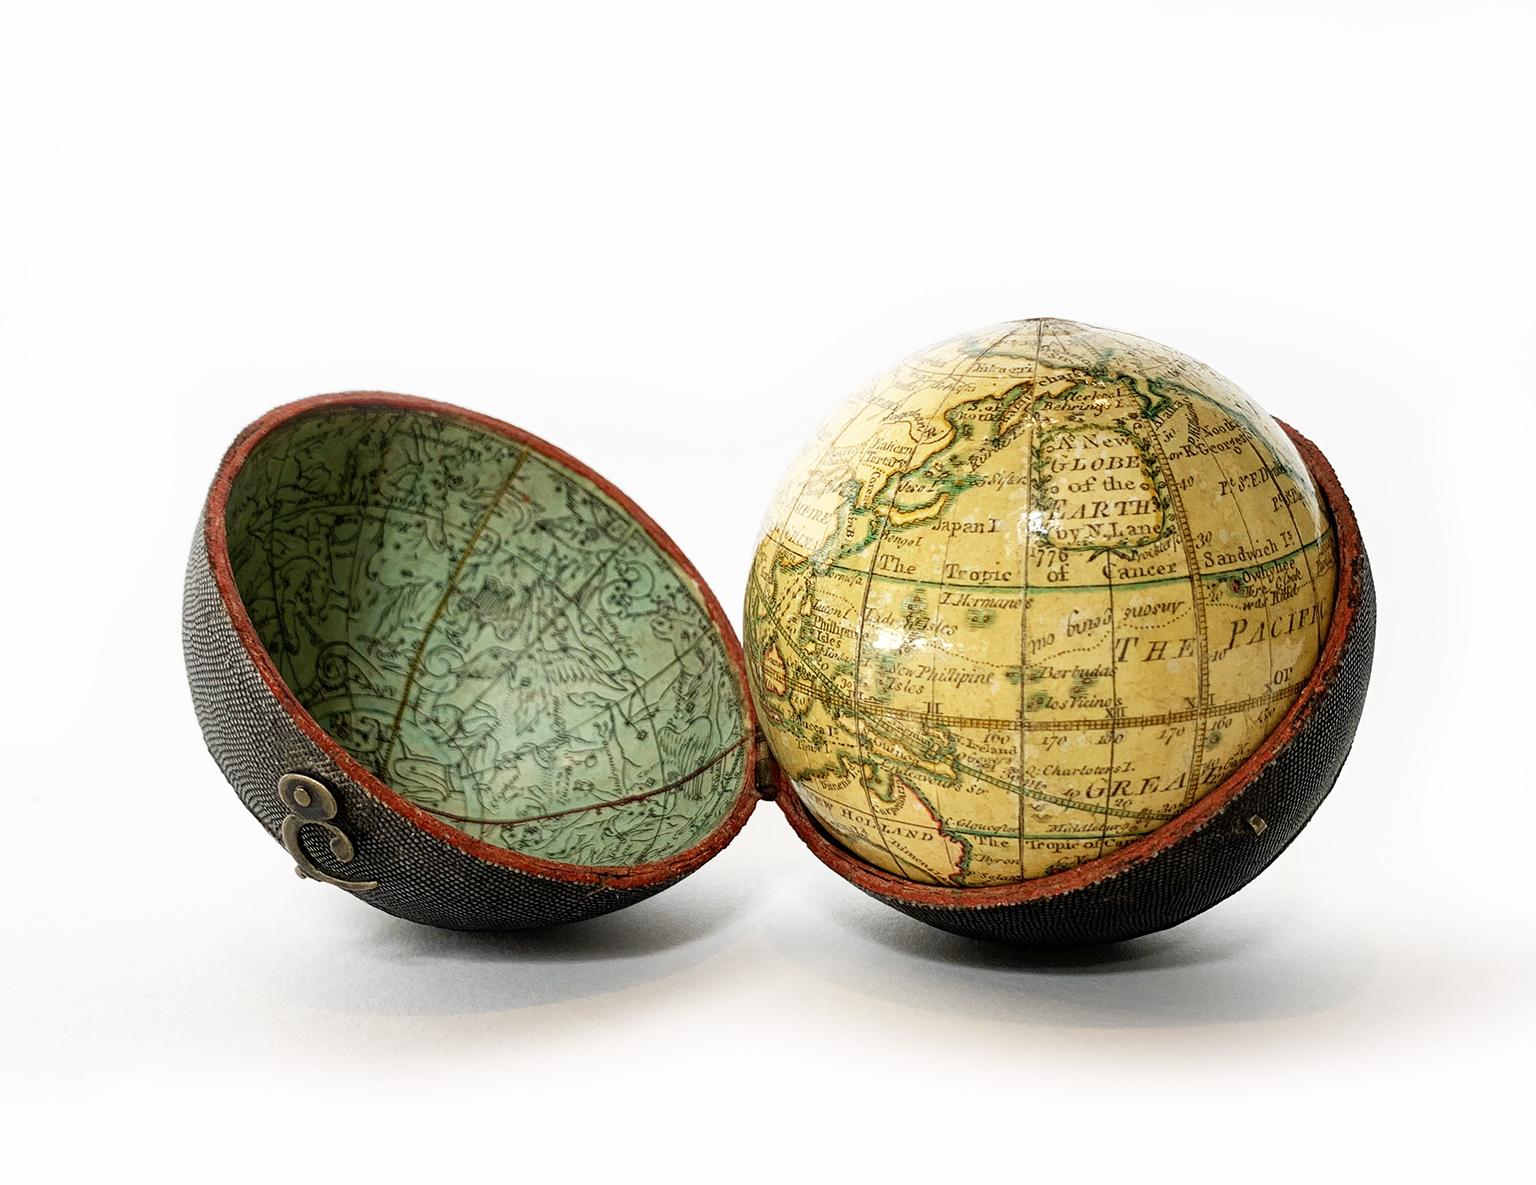 Globe de poche
Nicholas Lane 
Londres, après 1779

Le globe est contenu dans son étui d'origine, recouvert de cuir.
La sphère mesure 2,75 in (6,9 cm) tandis que l'étui mesure 2,9 in (7,5 cm).
Poids : 0,28 lb (128 g).
État de conservation : presque